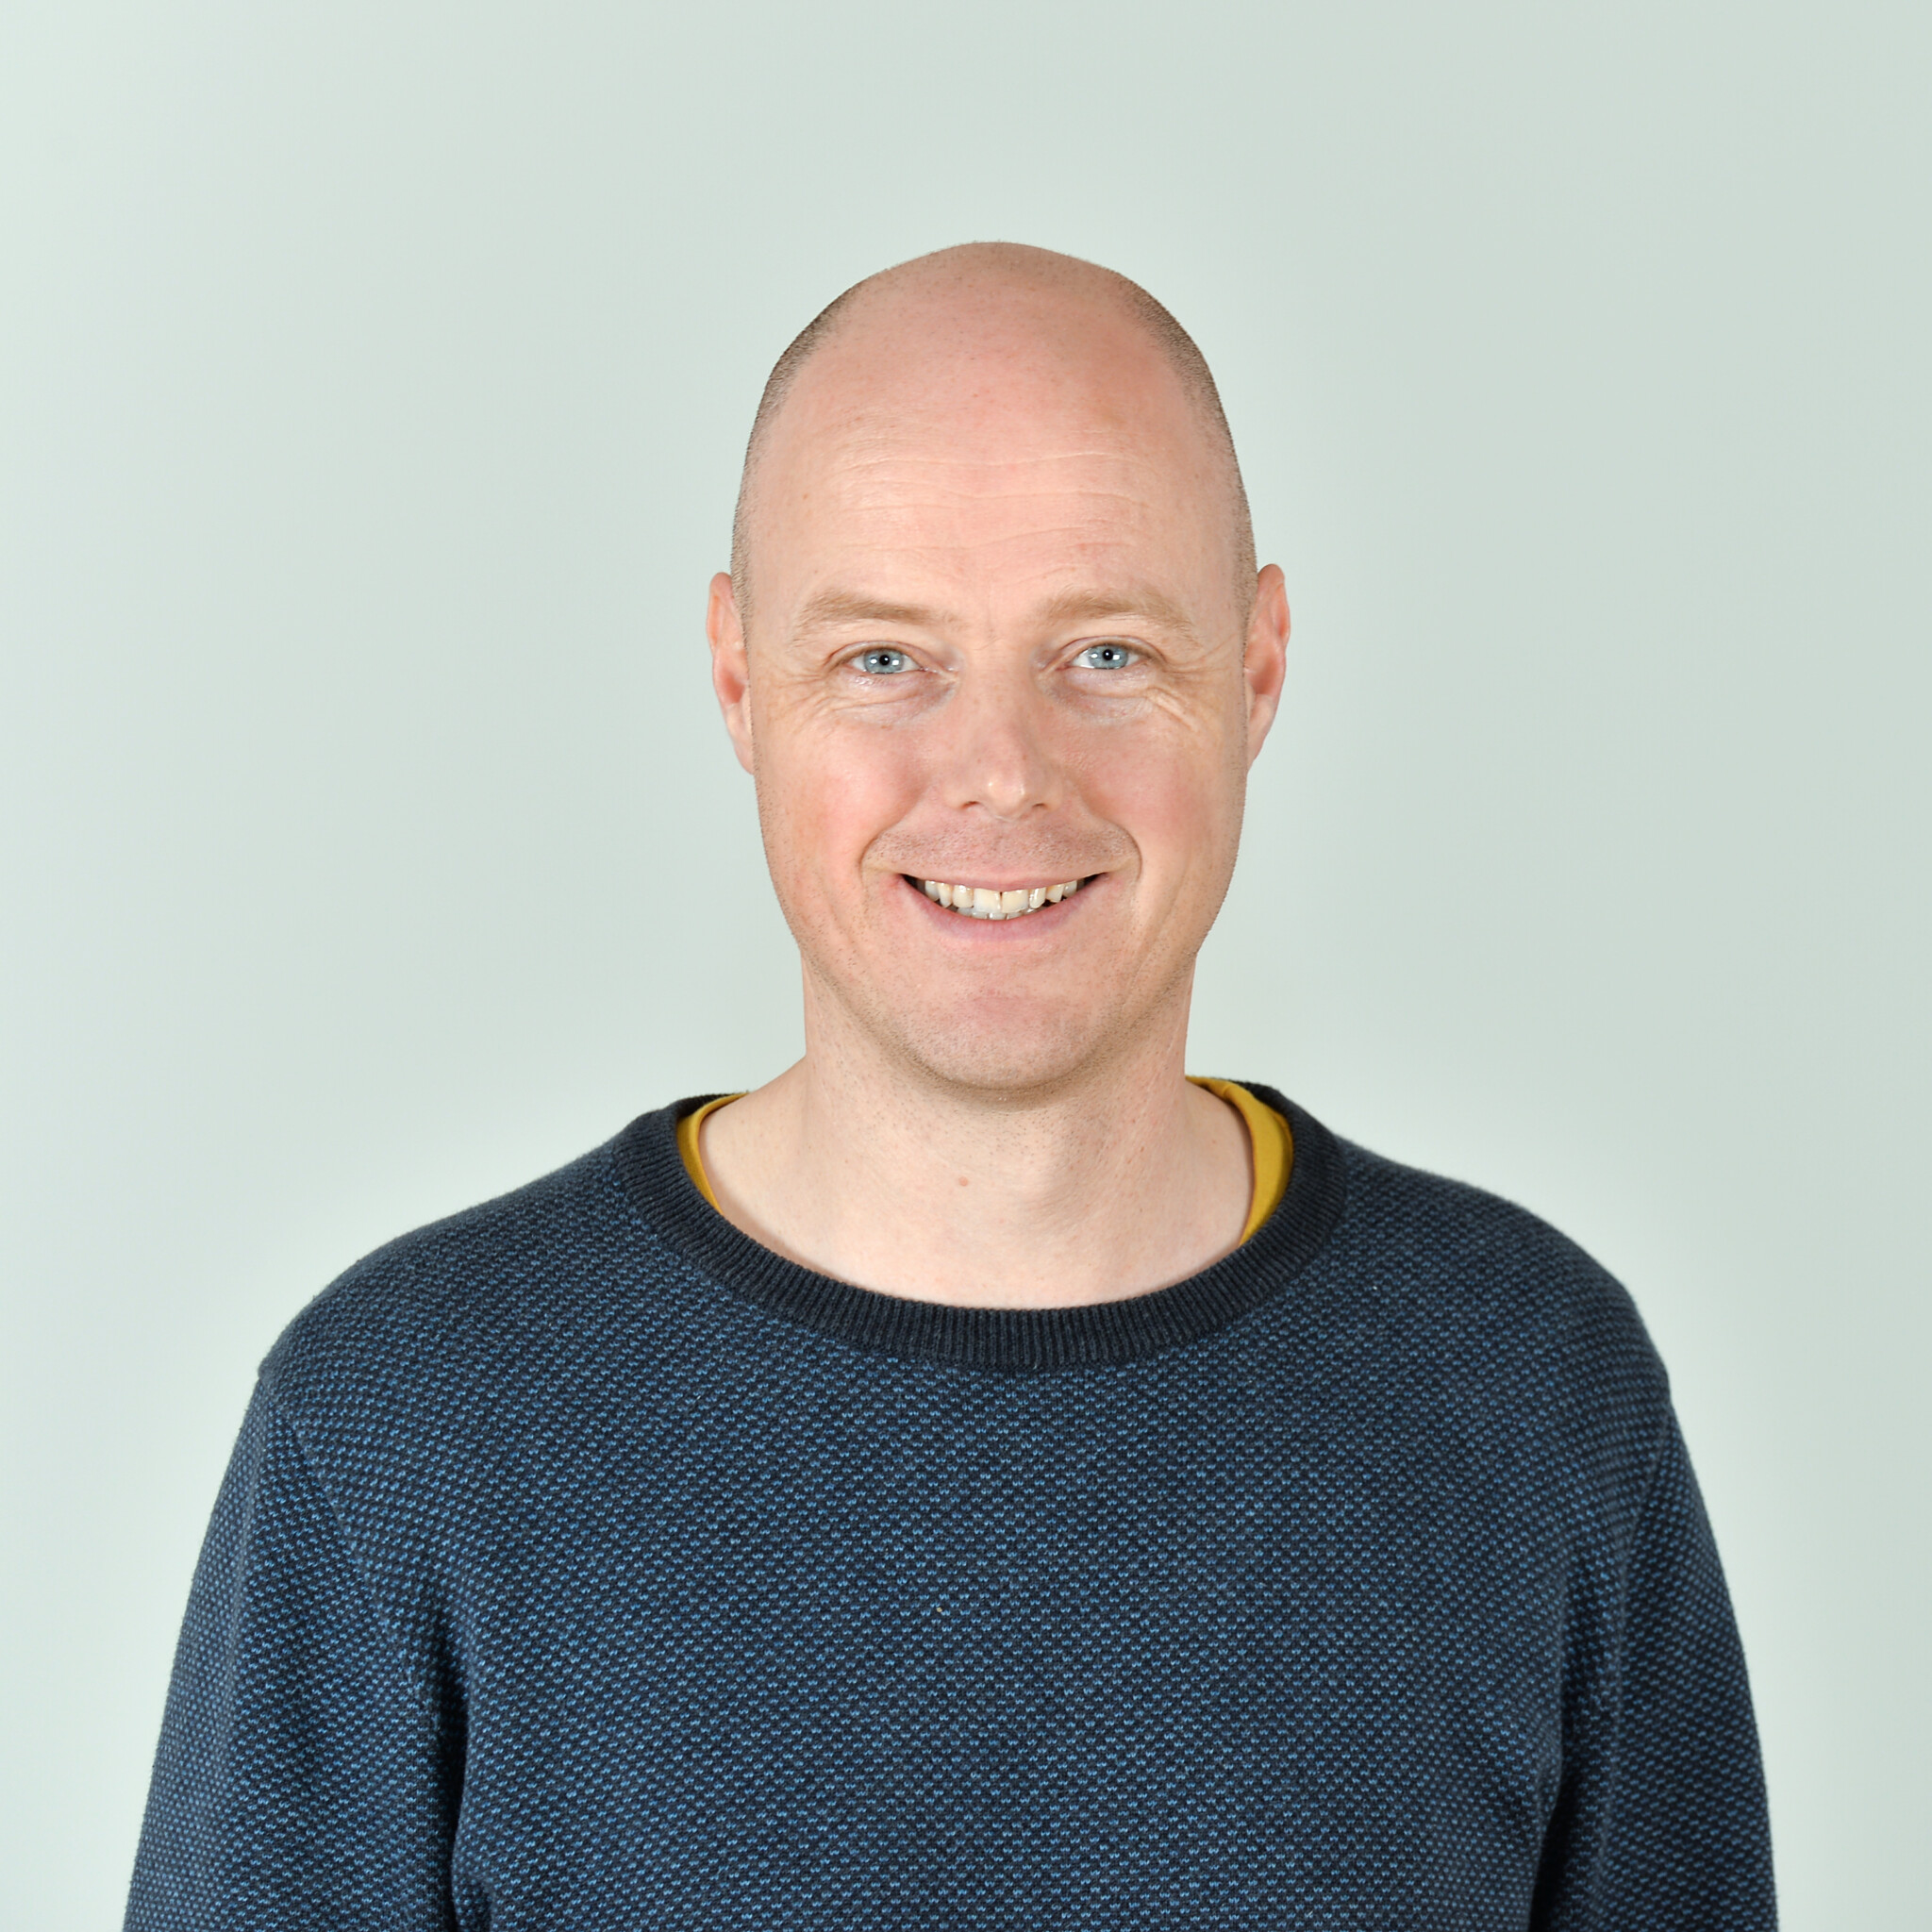 Profilbild von Frank Musekamp im blauen Pullover